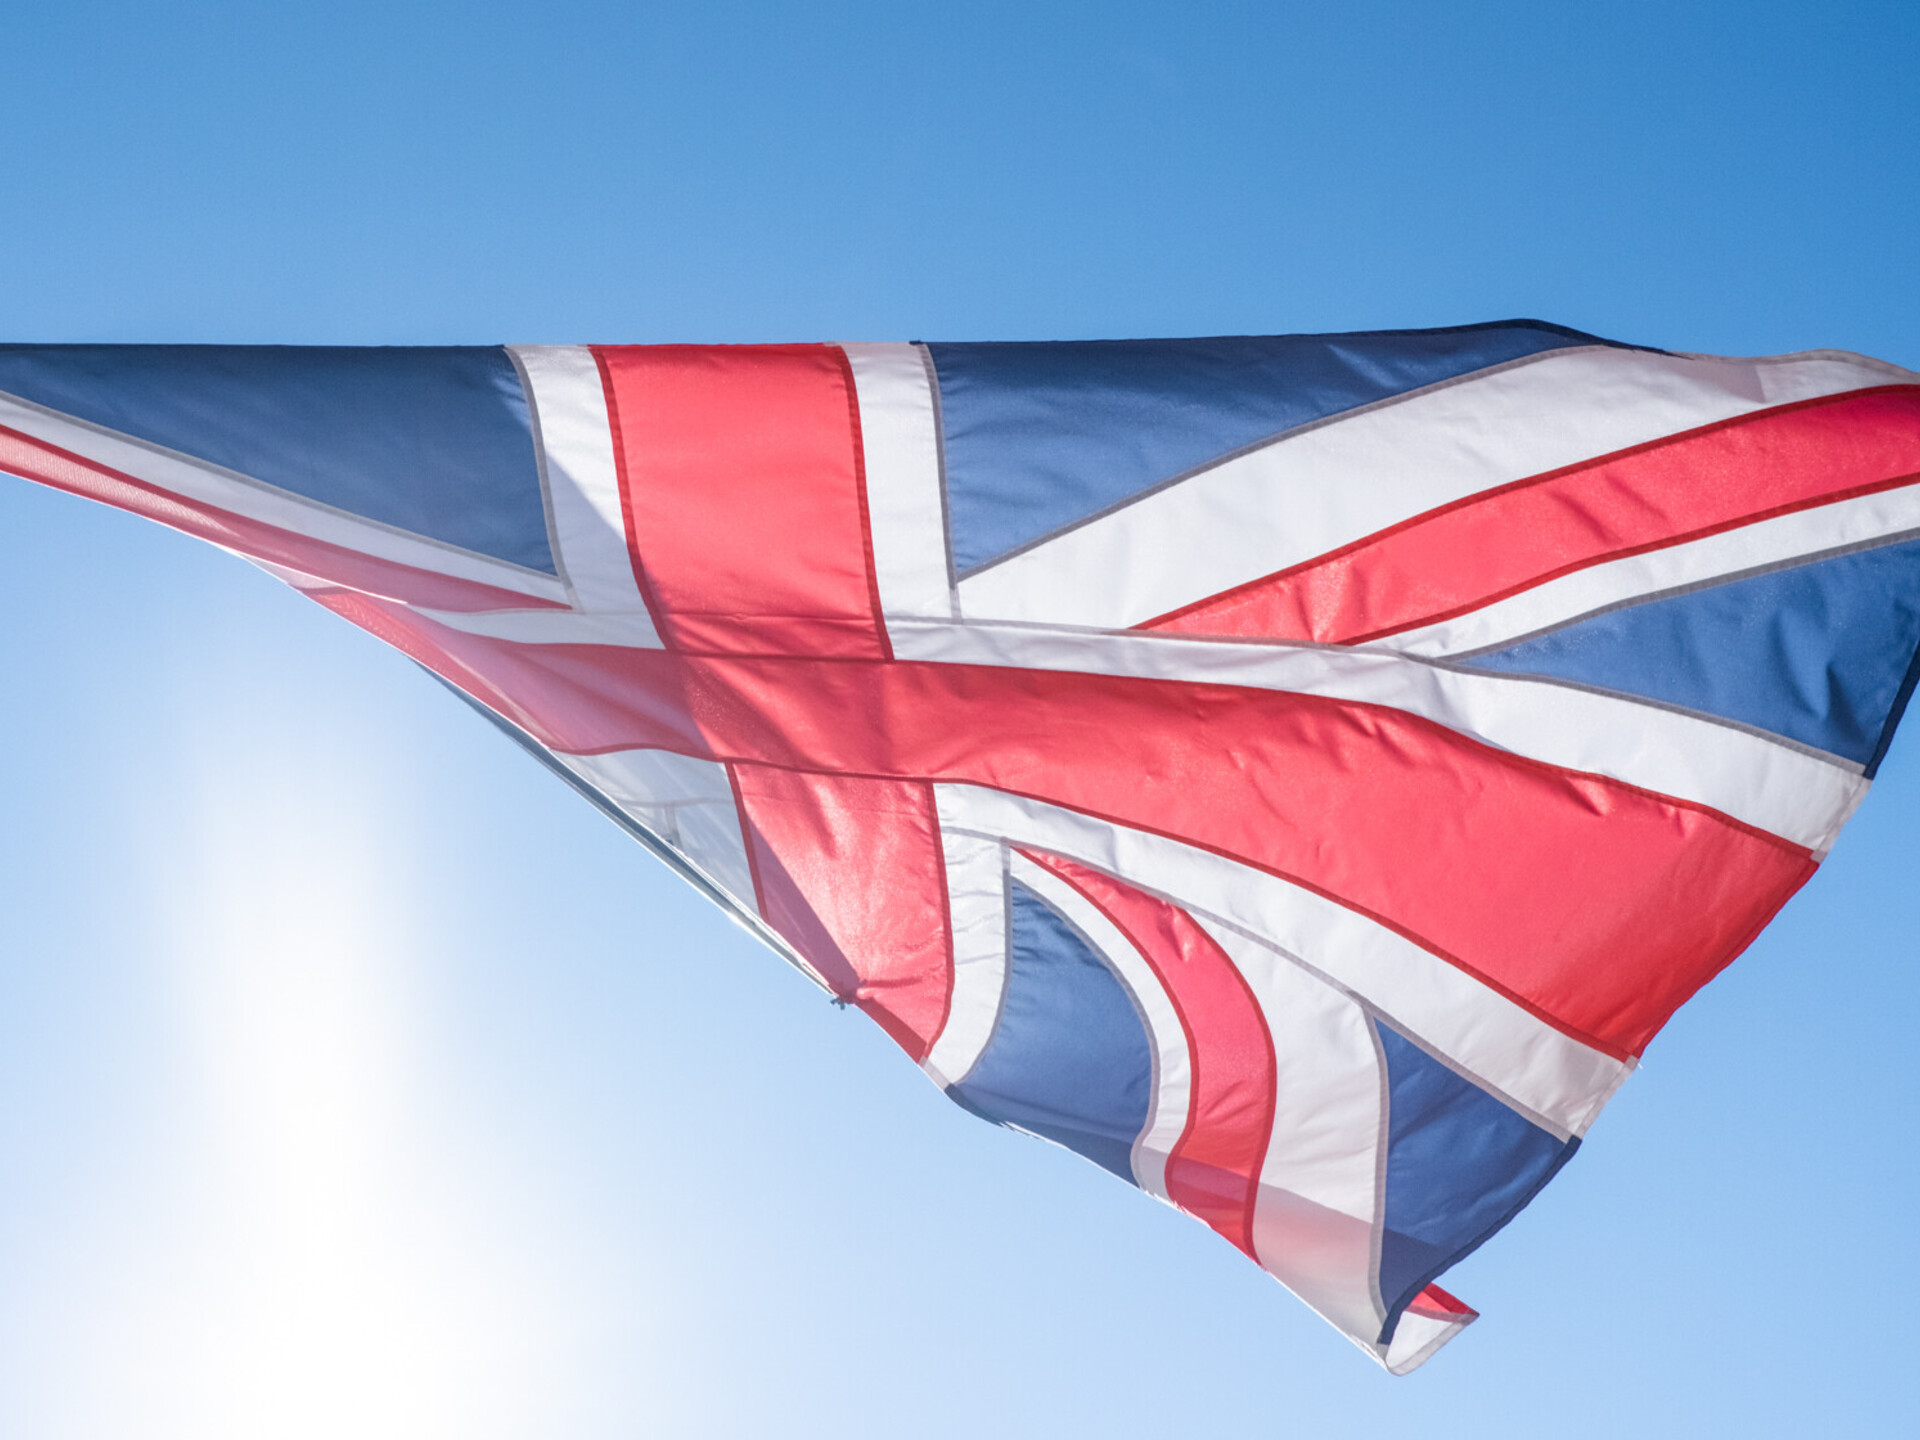 Великобритания планирует ввести налог на въезд: какую сумму будут взимать с иммигрантов